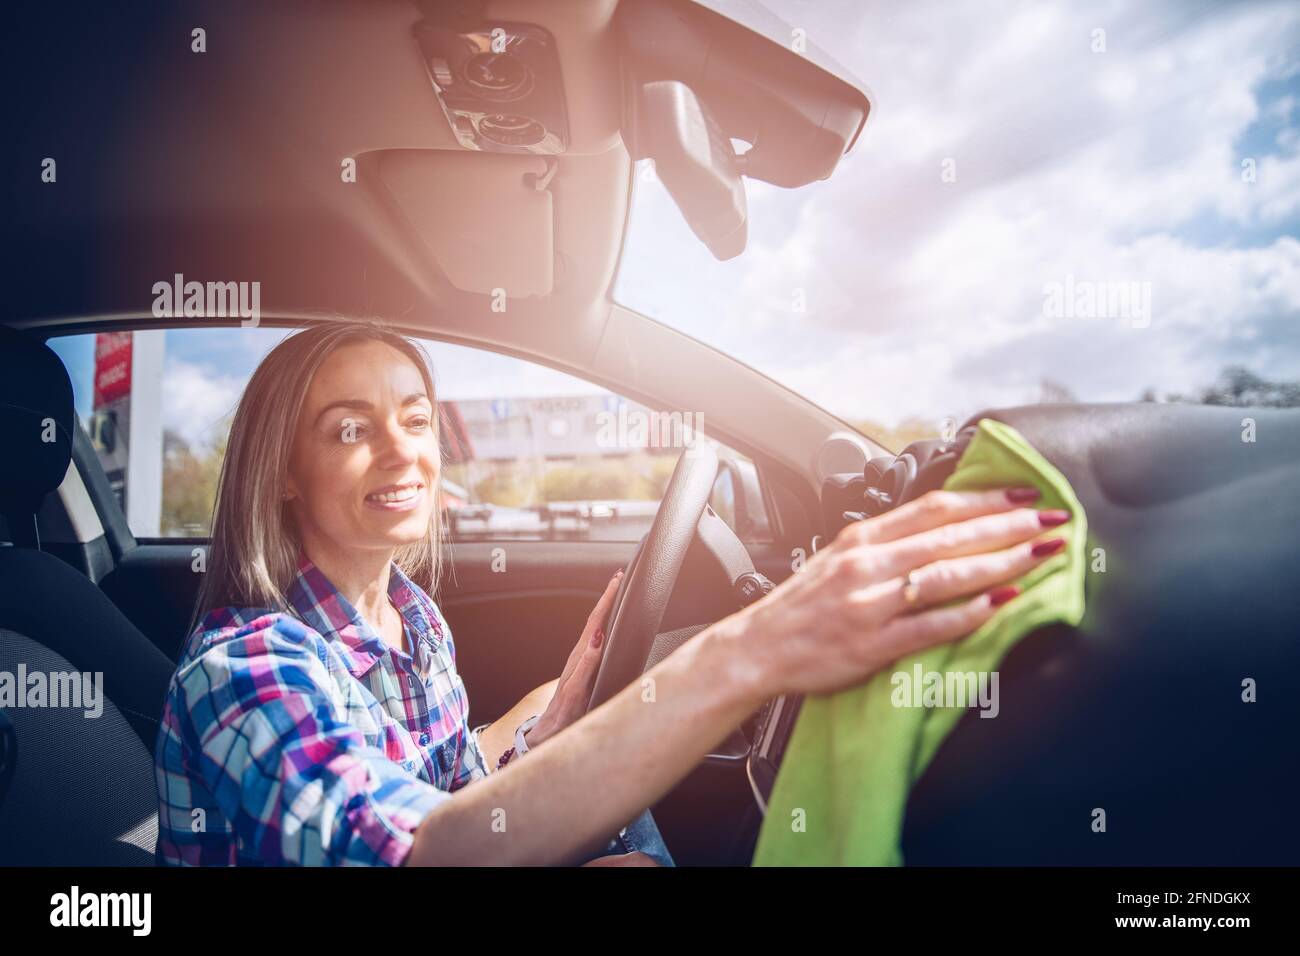 Lächelnde Frau verwendet ein Mikrofasertuch, um den Innenraum des Autos zu reinigen. Stockfoto